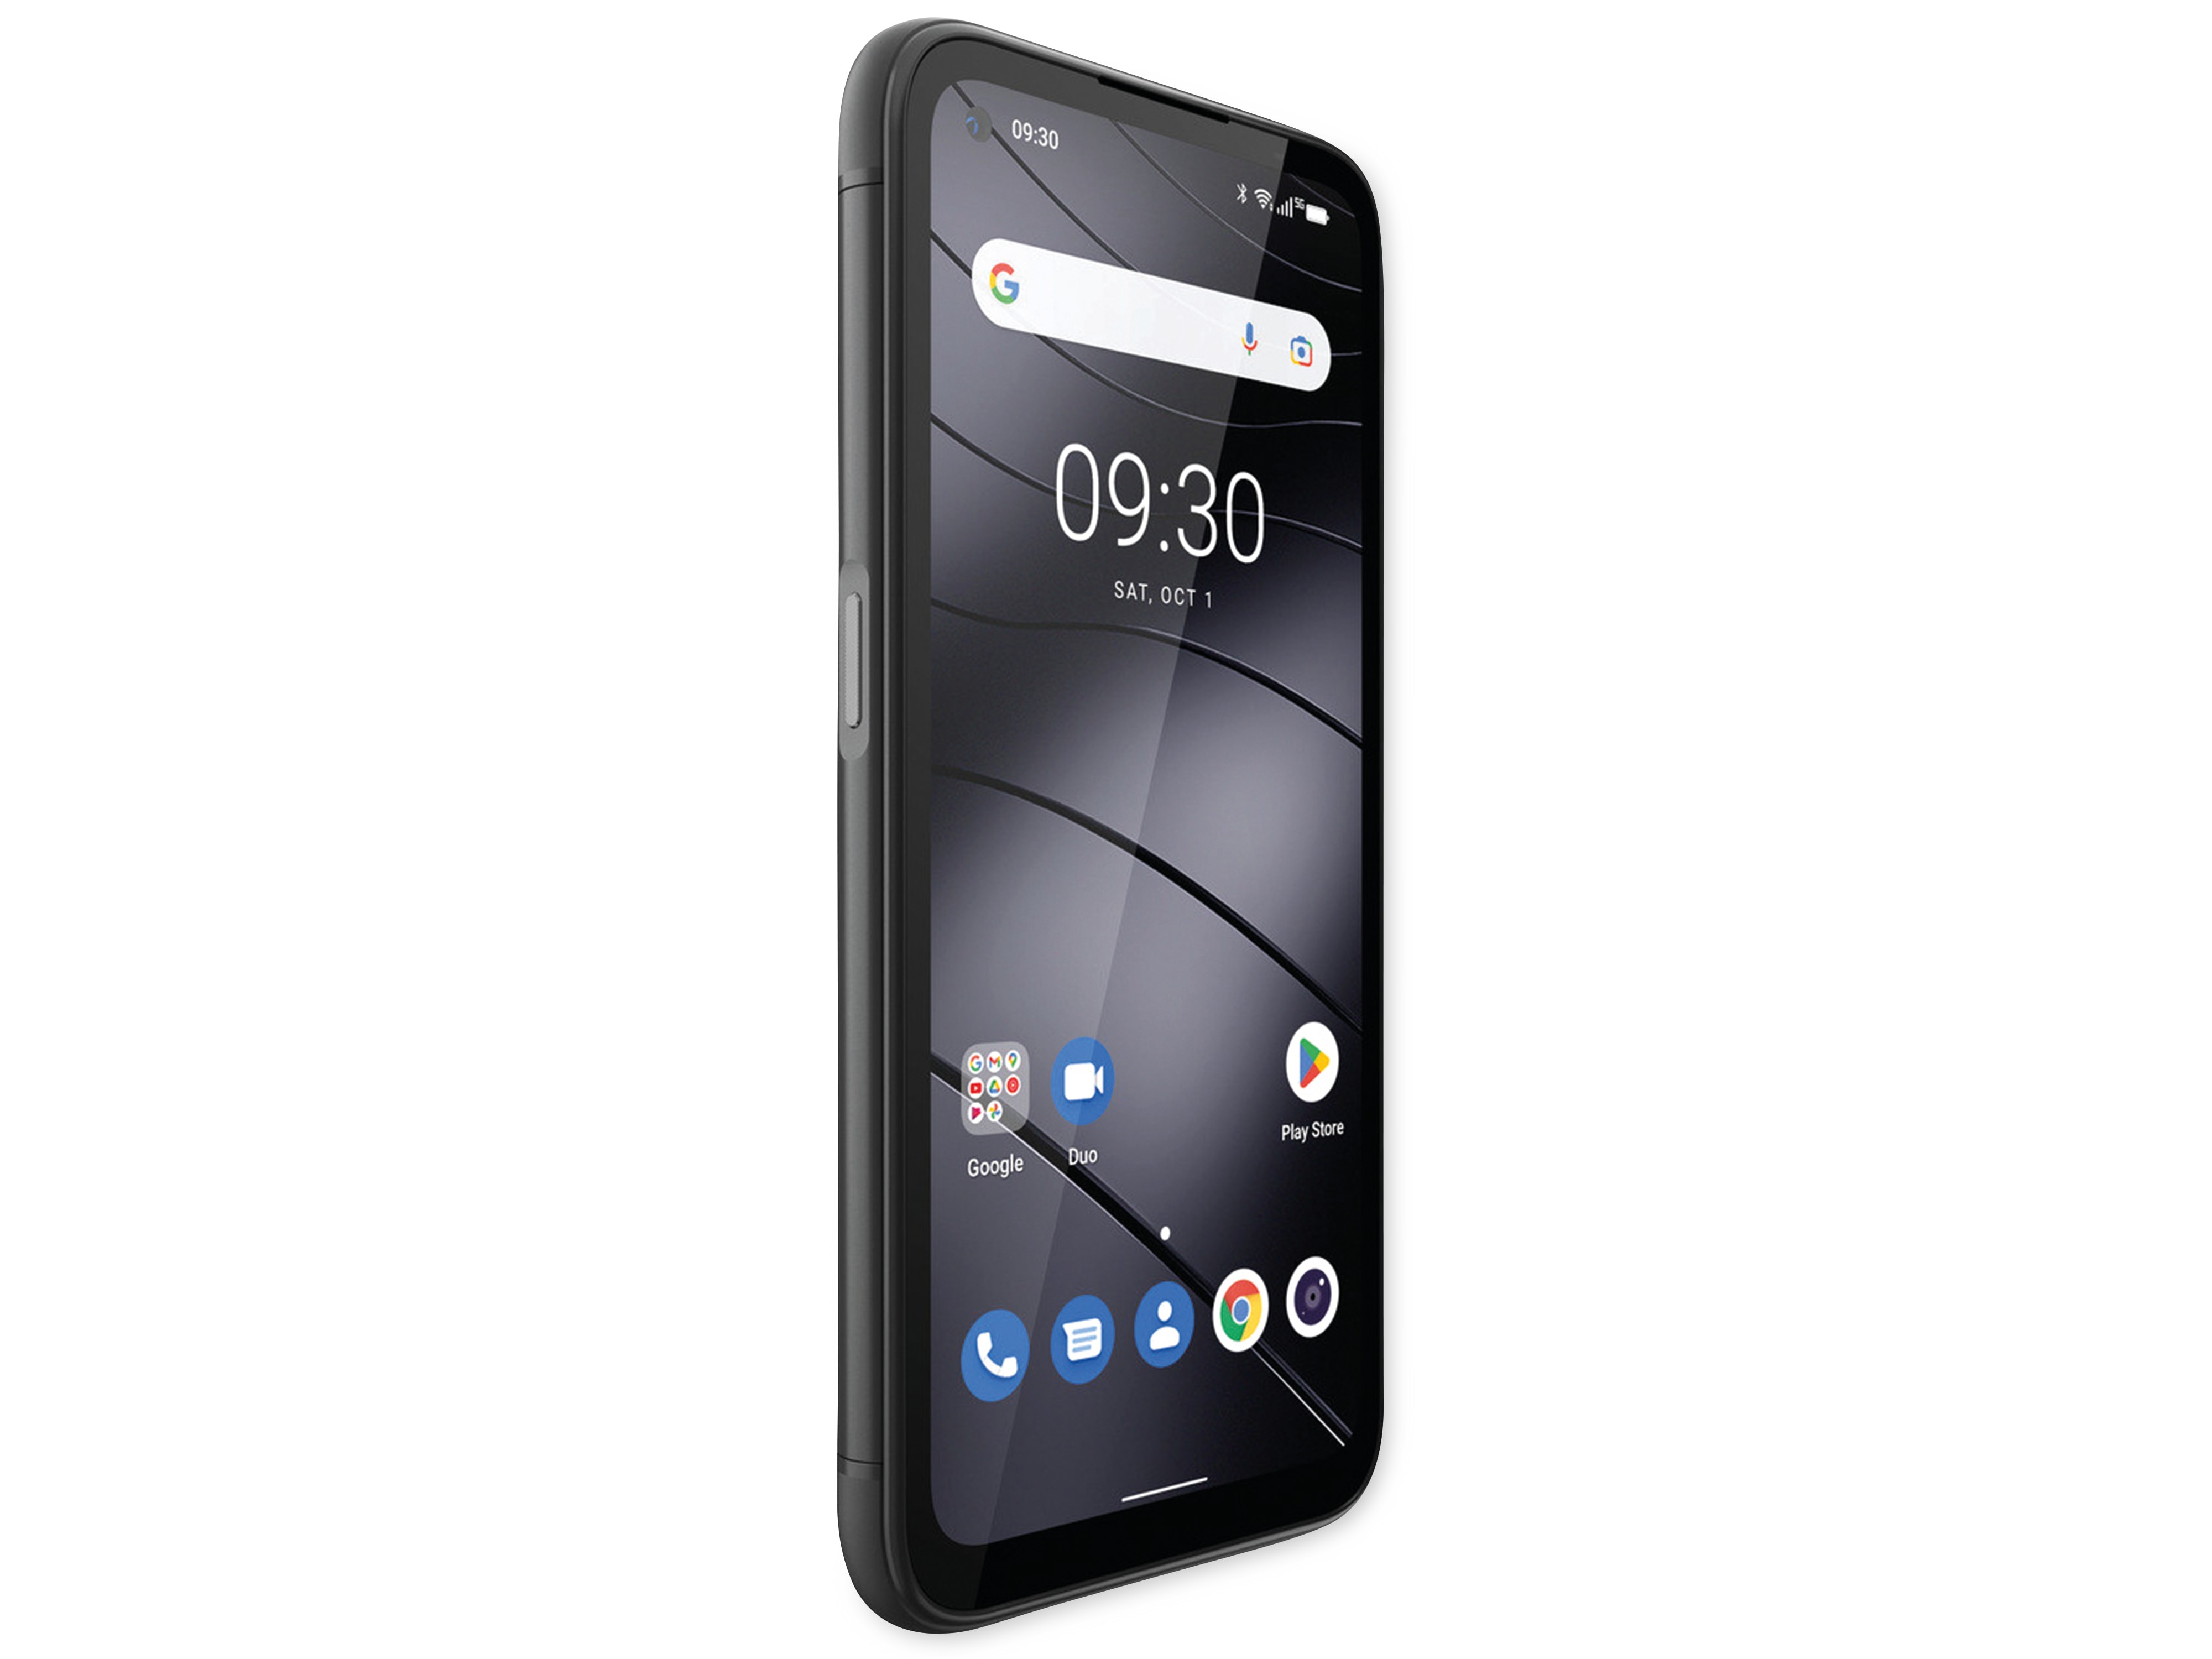 GIGASET Smartphone GX6, schwarz